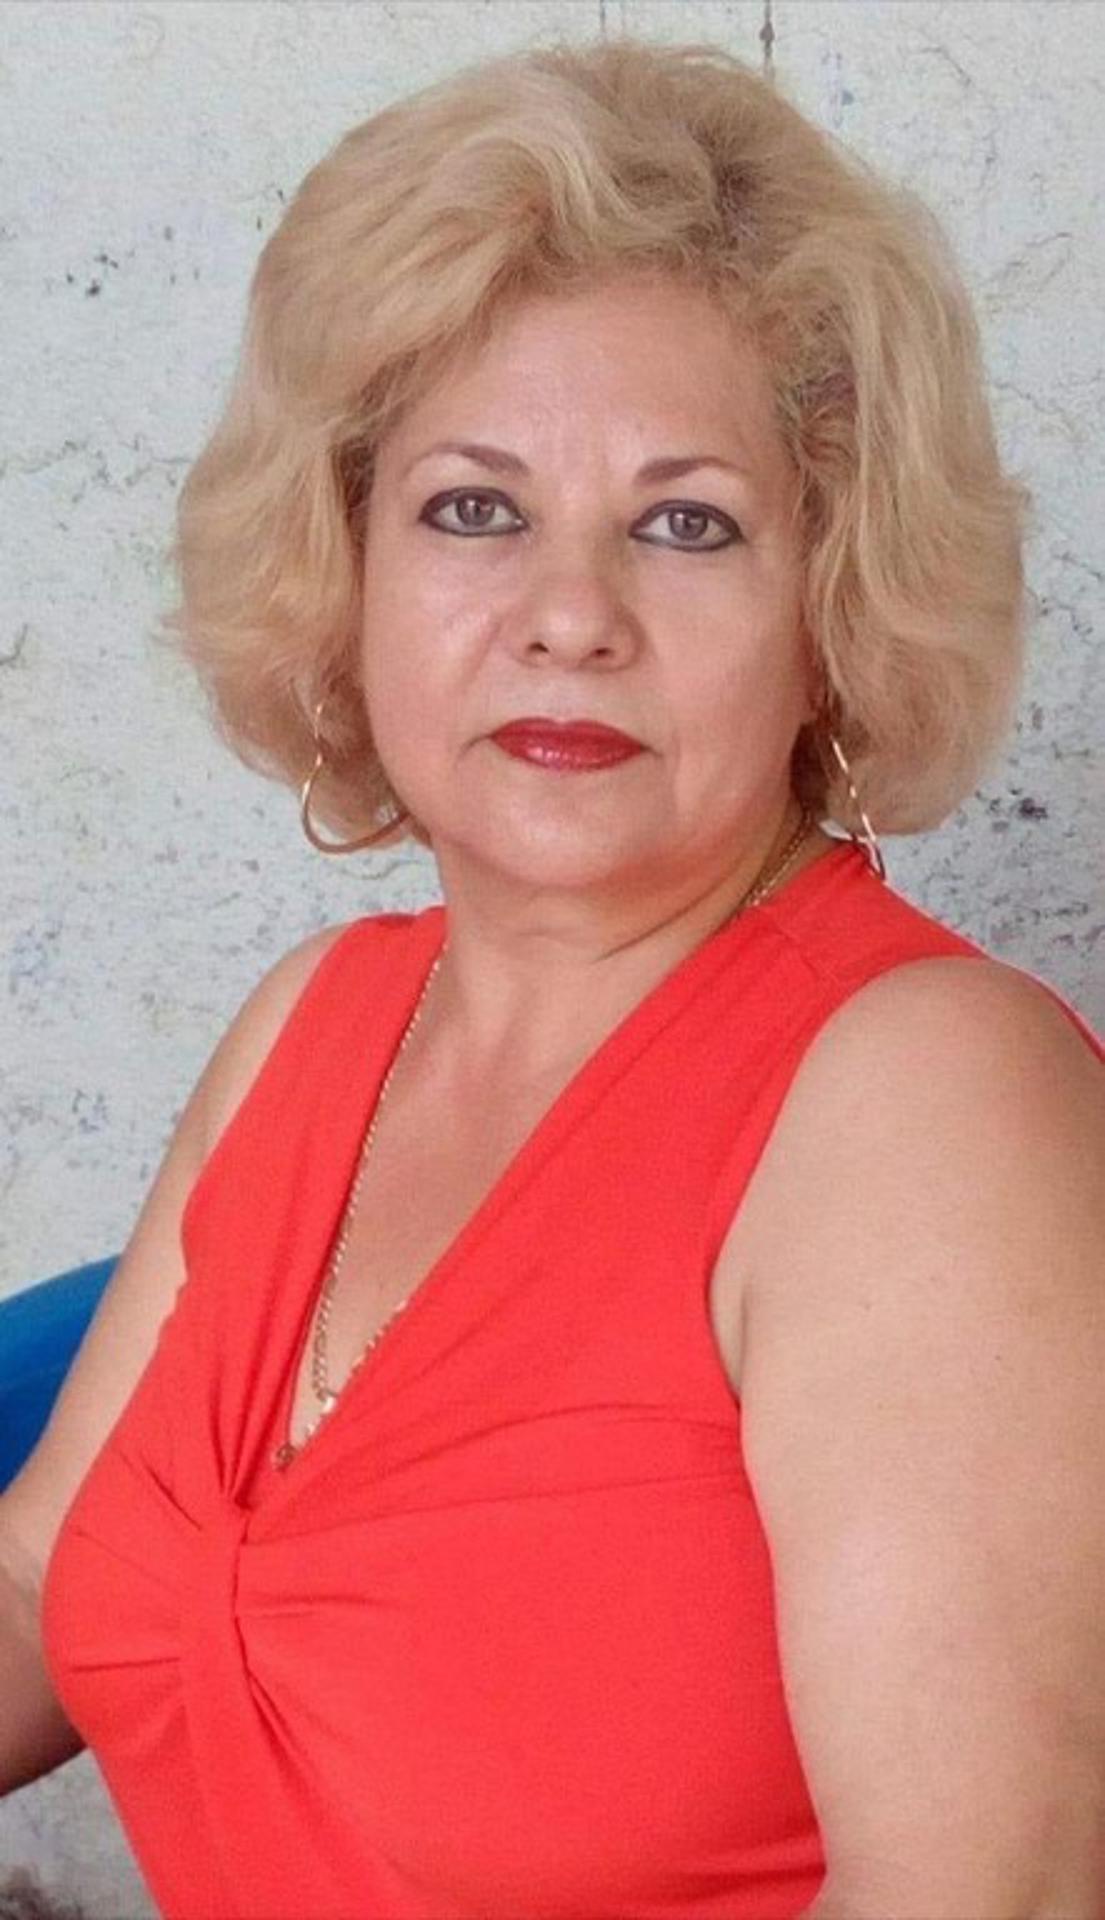 Fotografía cedida por el Buró Federal de Investigaciones de Estados Unidos (FBI) donde aparece la latina María del Carmen López, de 63 años, que fue secuestrada de una vivienda en Pueblo Nuevo, en el estado mexicano de Colima, el pasado 9 de febrero, según dijo el FBI en un comunicado de prensa. EFE/FBI /SOLO USO EDITORIAL/NO VENTAS/SOLO DISPONIBLE PARA ILUSTRAR LA NOTICIA QUE ACOMPAÑA/CRÉDITO OBLIGATORIO
